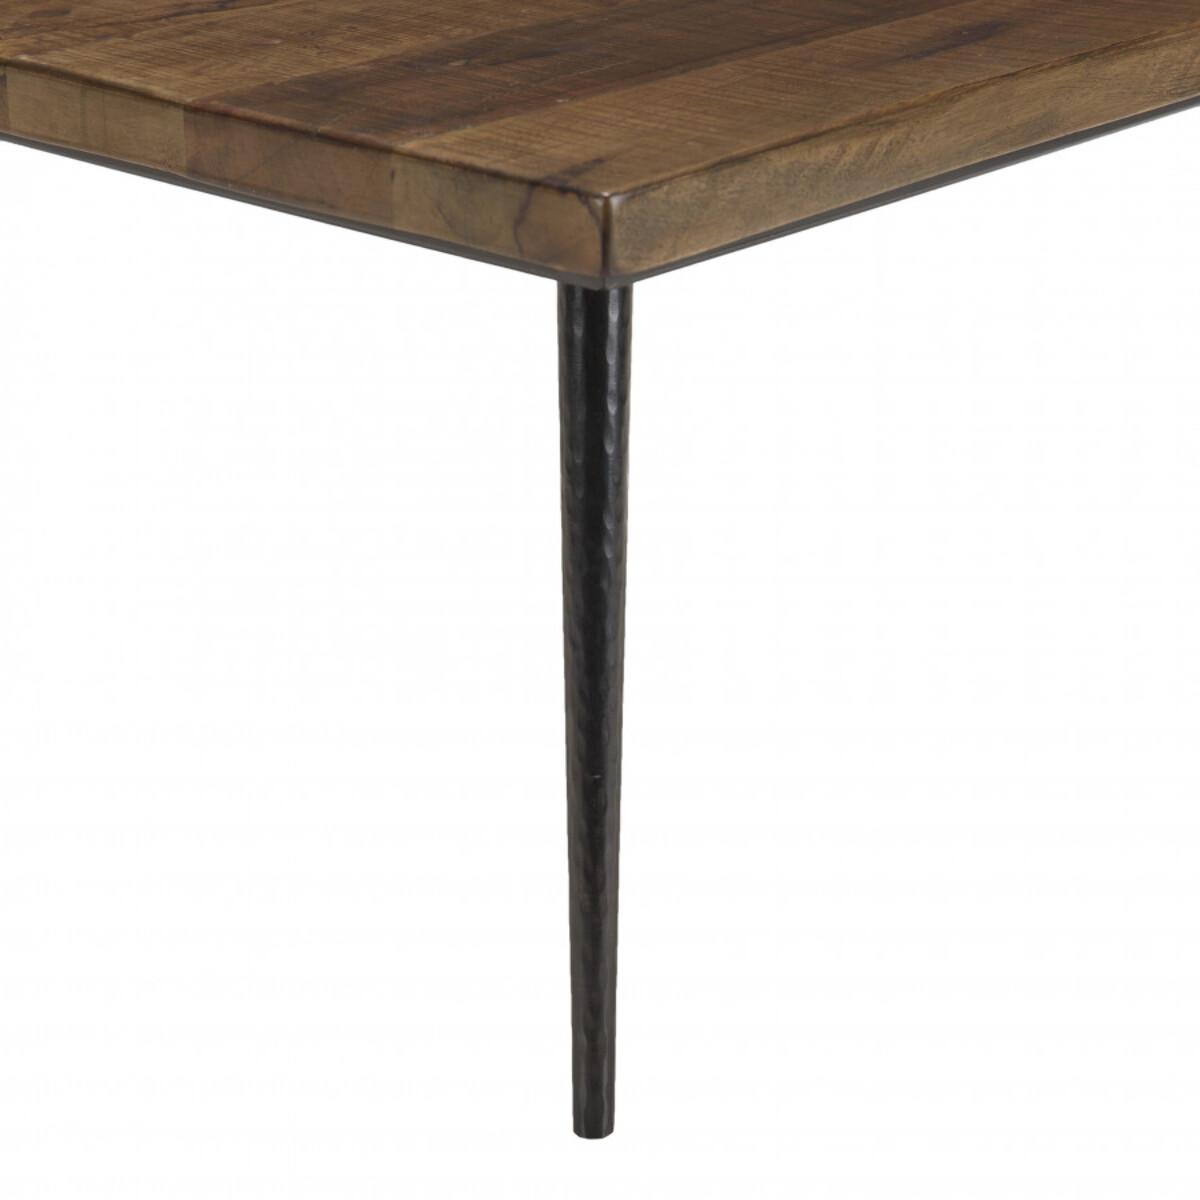 KIARA - Table basse rect. 135x70cm bois recyclé pieds métal